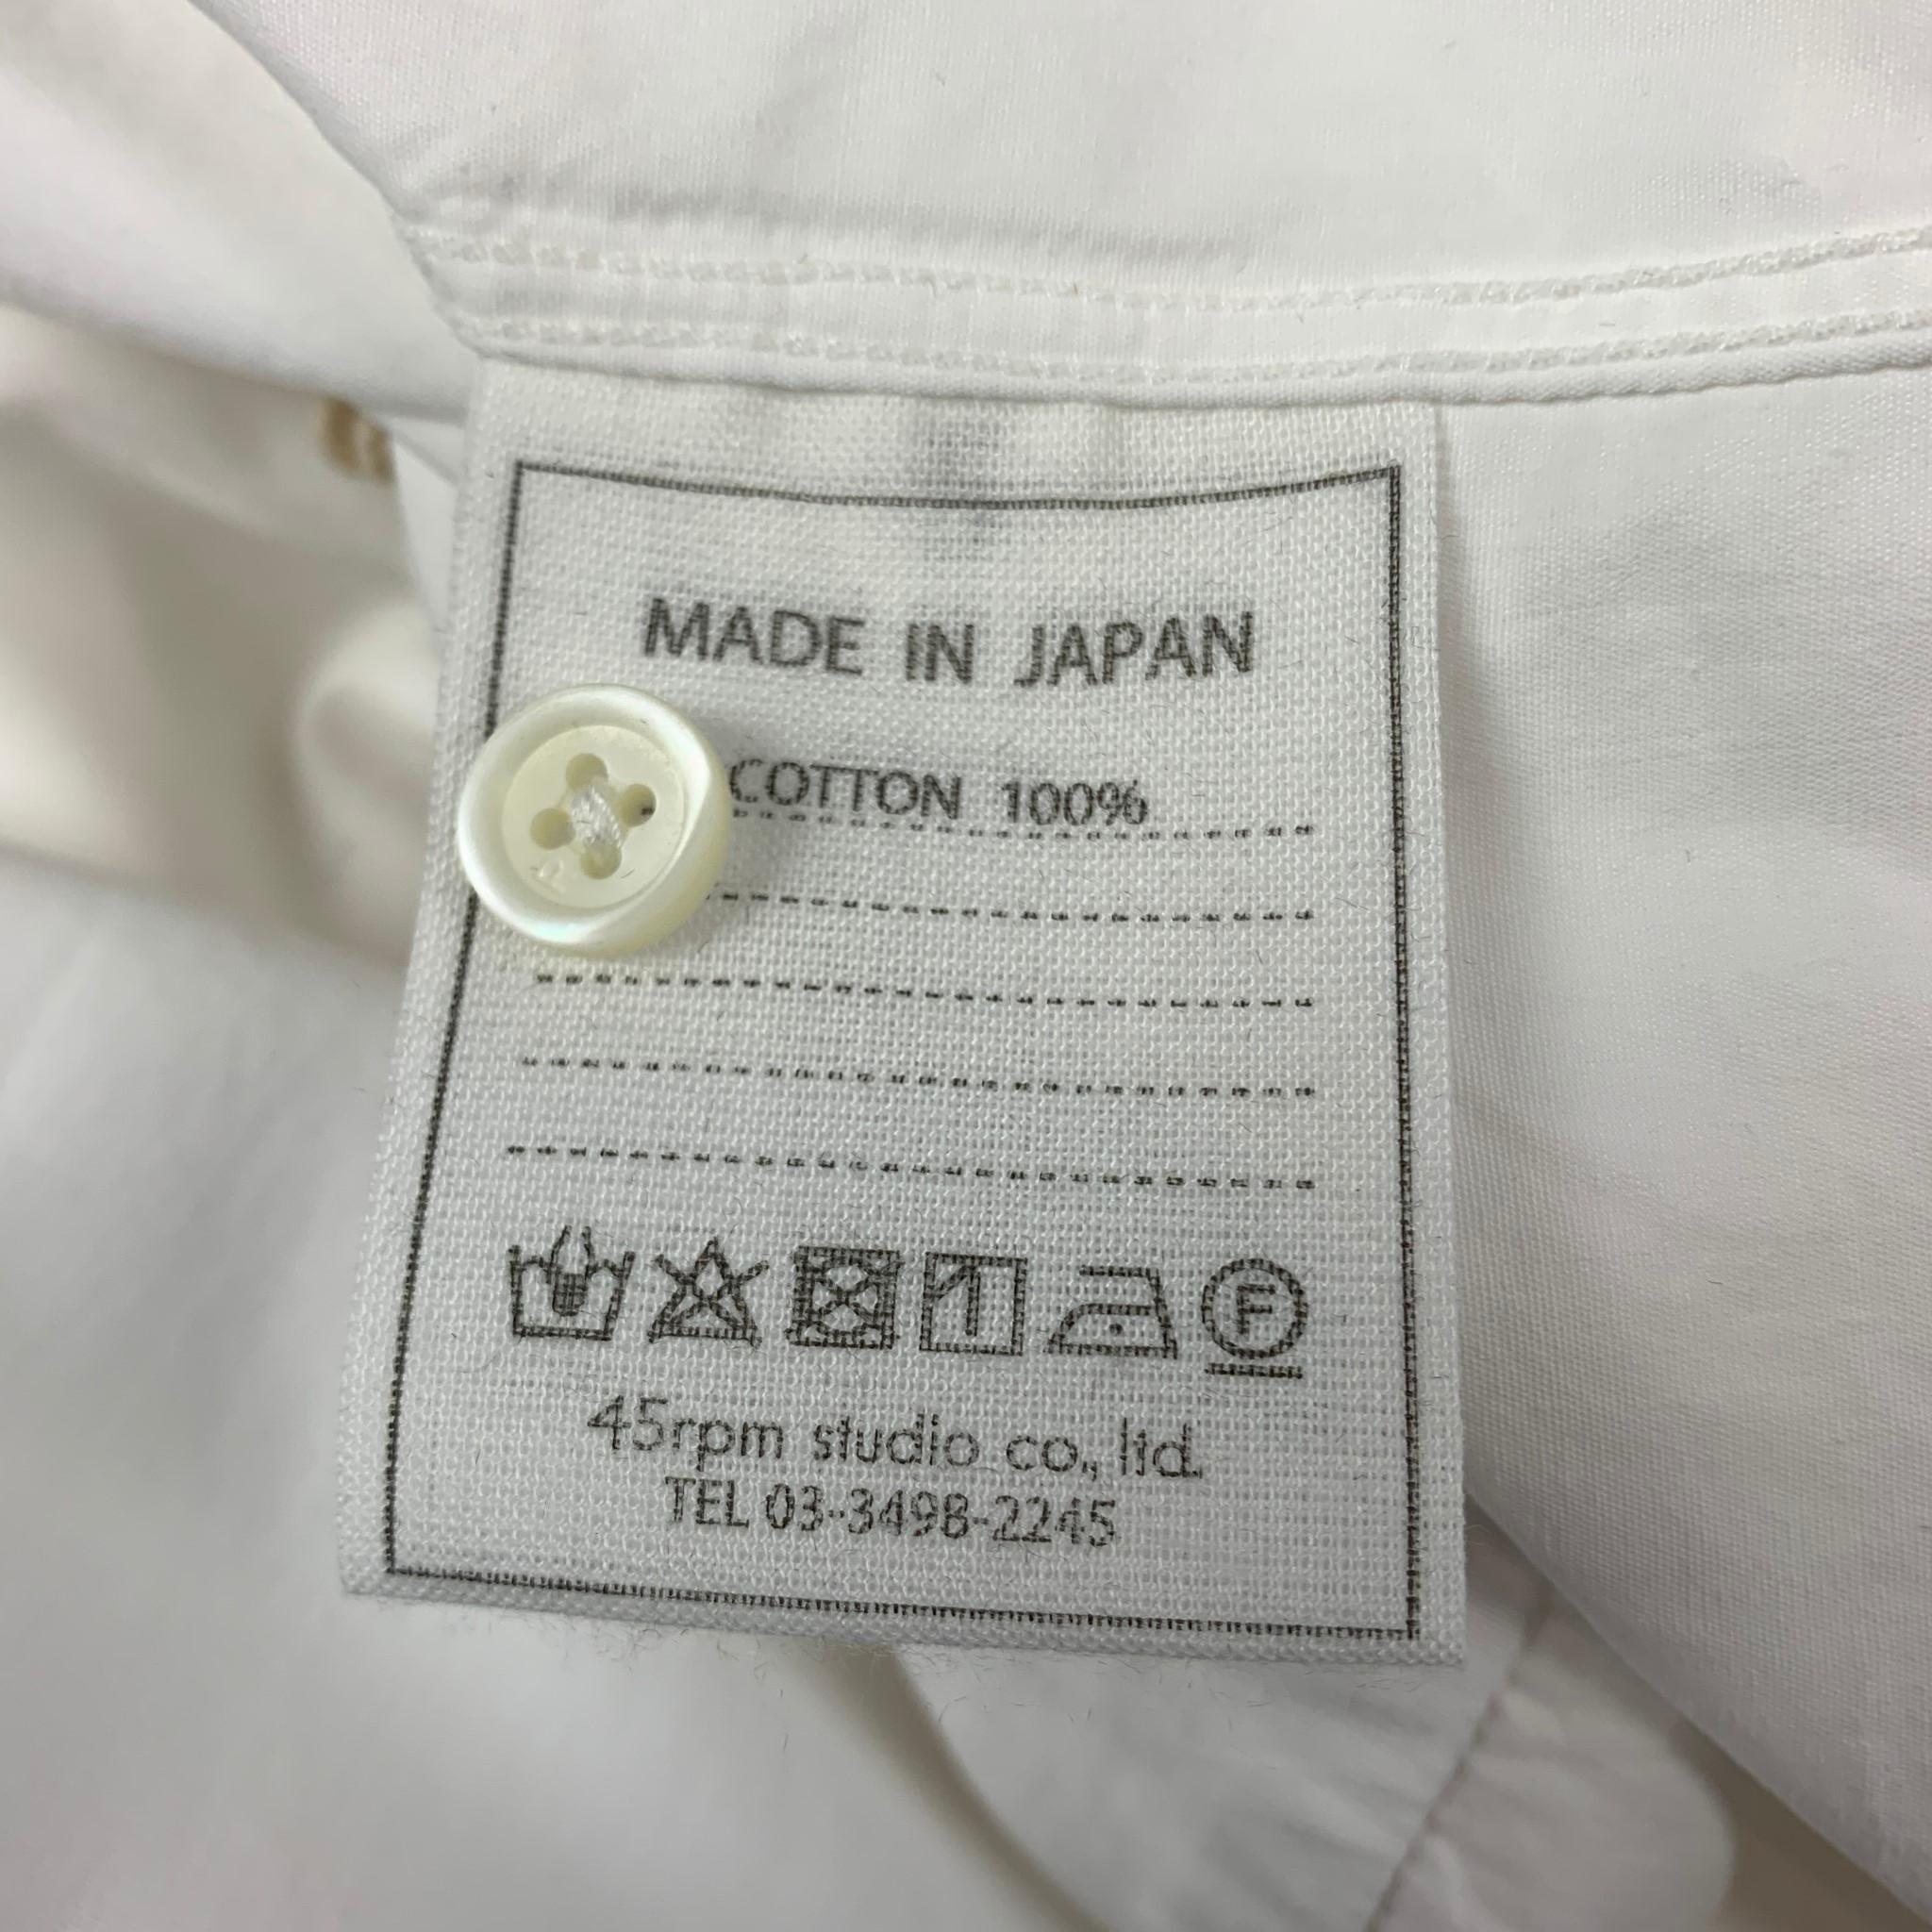 45rpm Size XL White Cotton Button Down Long Sleeve Shirt 1